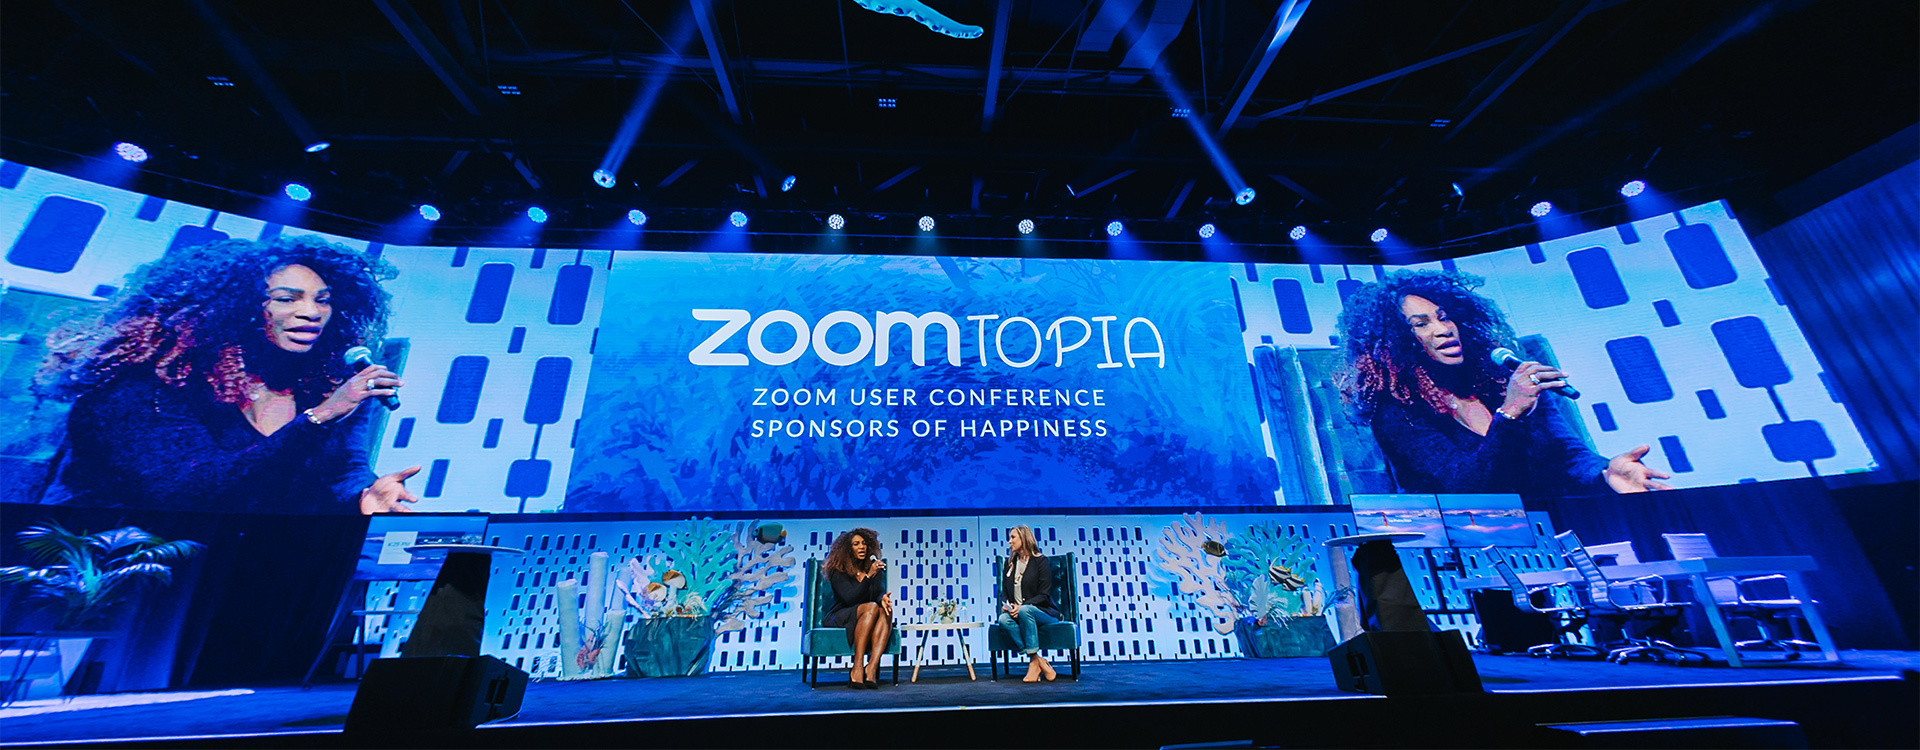 Serena Williams speaks at Zoomtopia